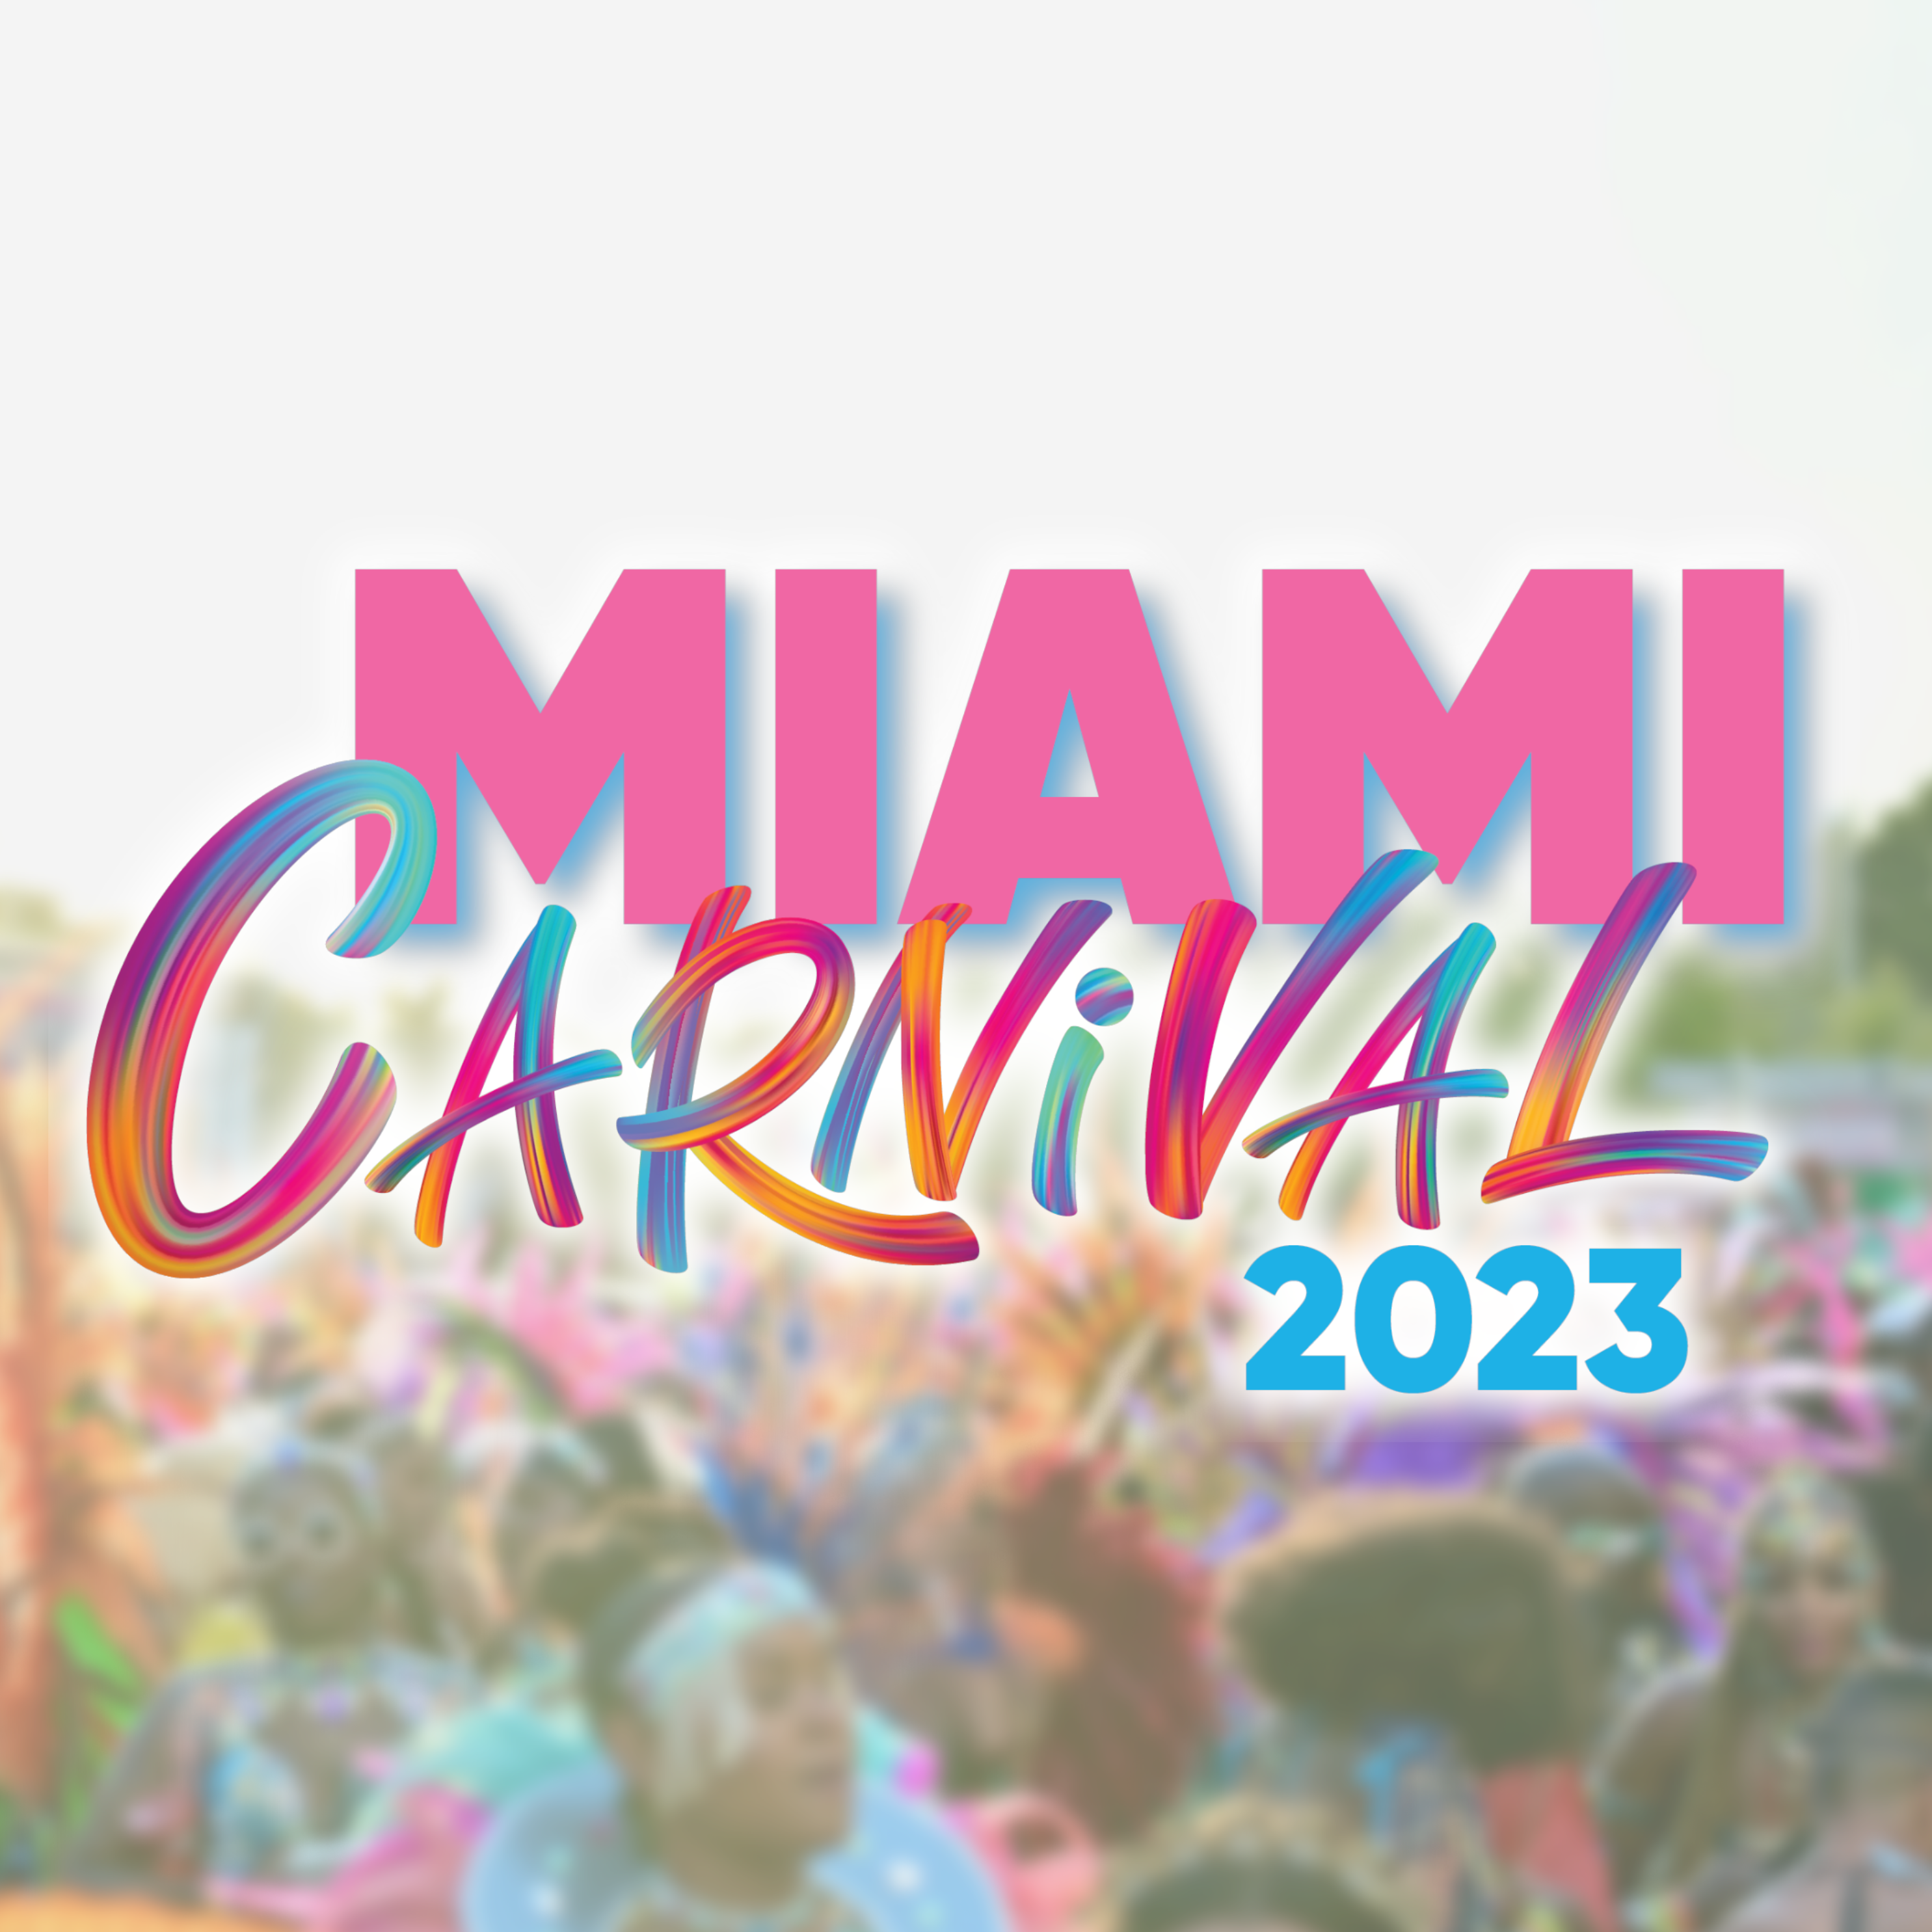 miami carnival cruise 2023